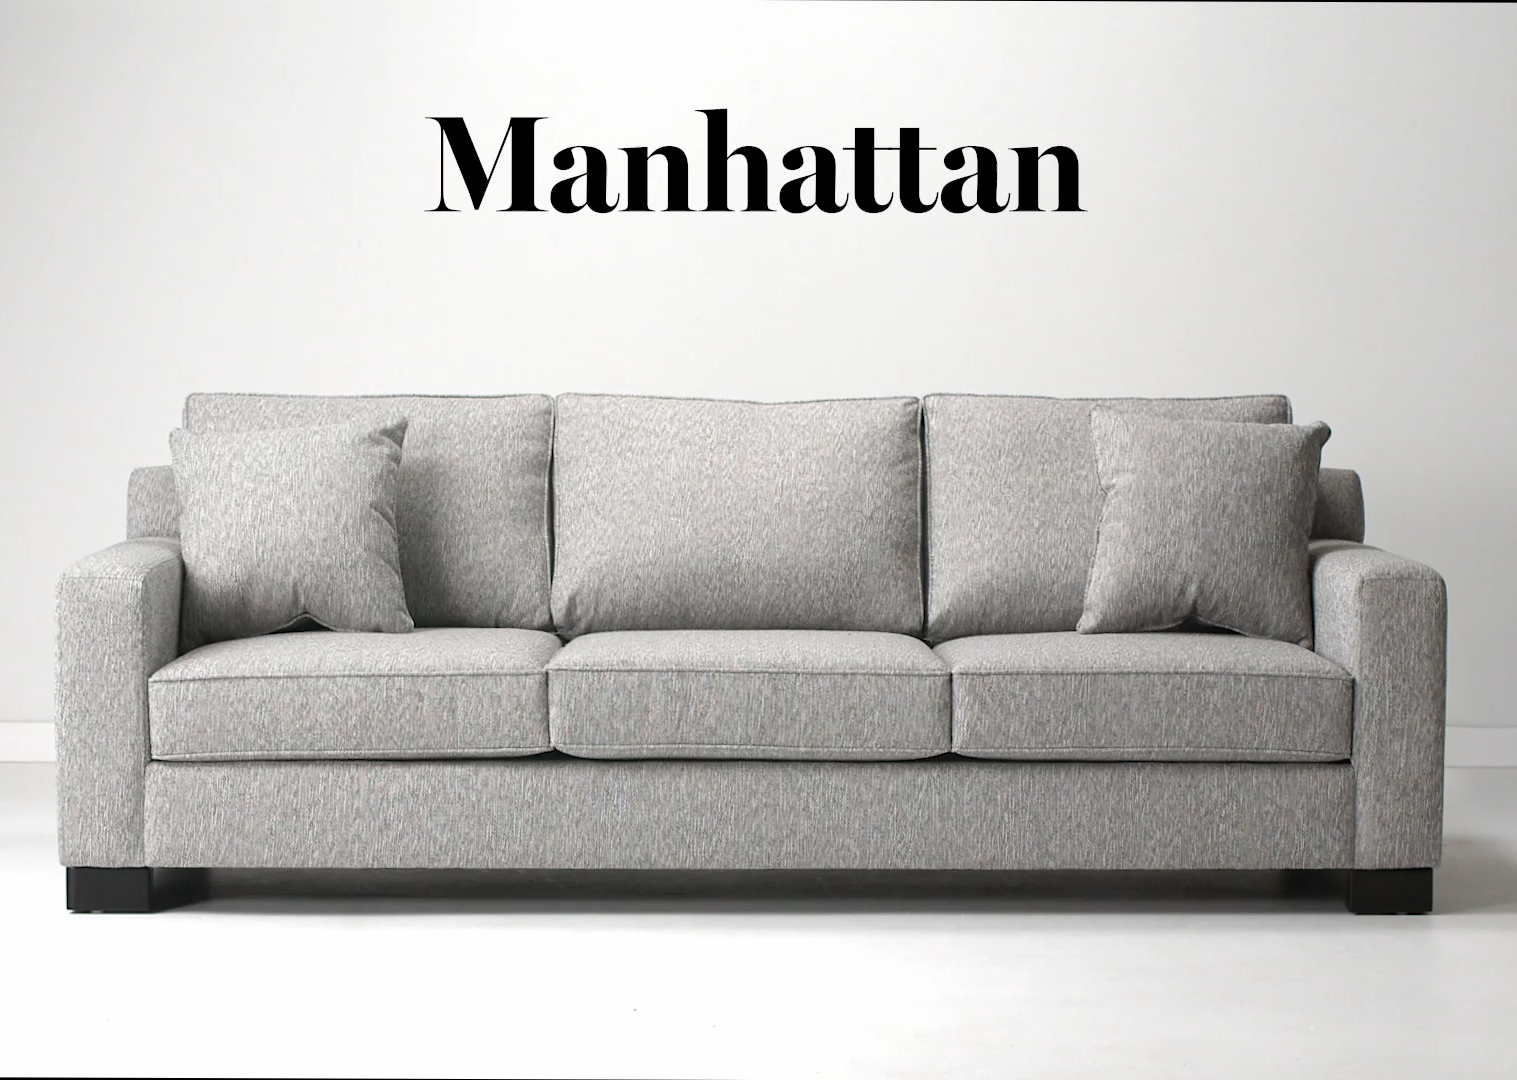 Canapé Manhattan personnalisé